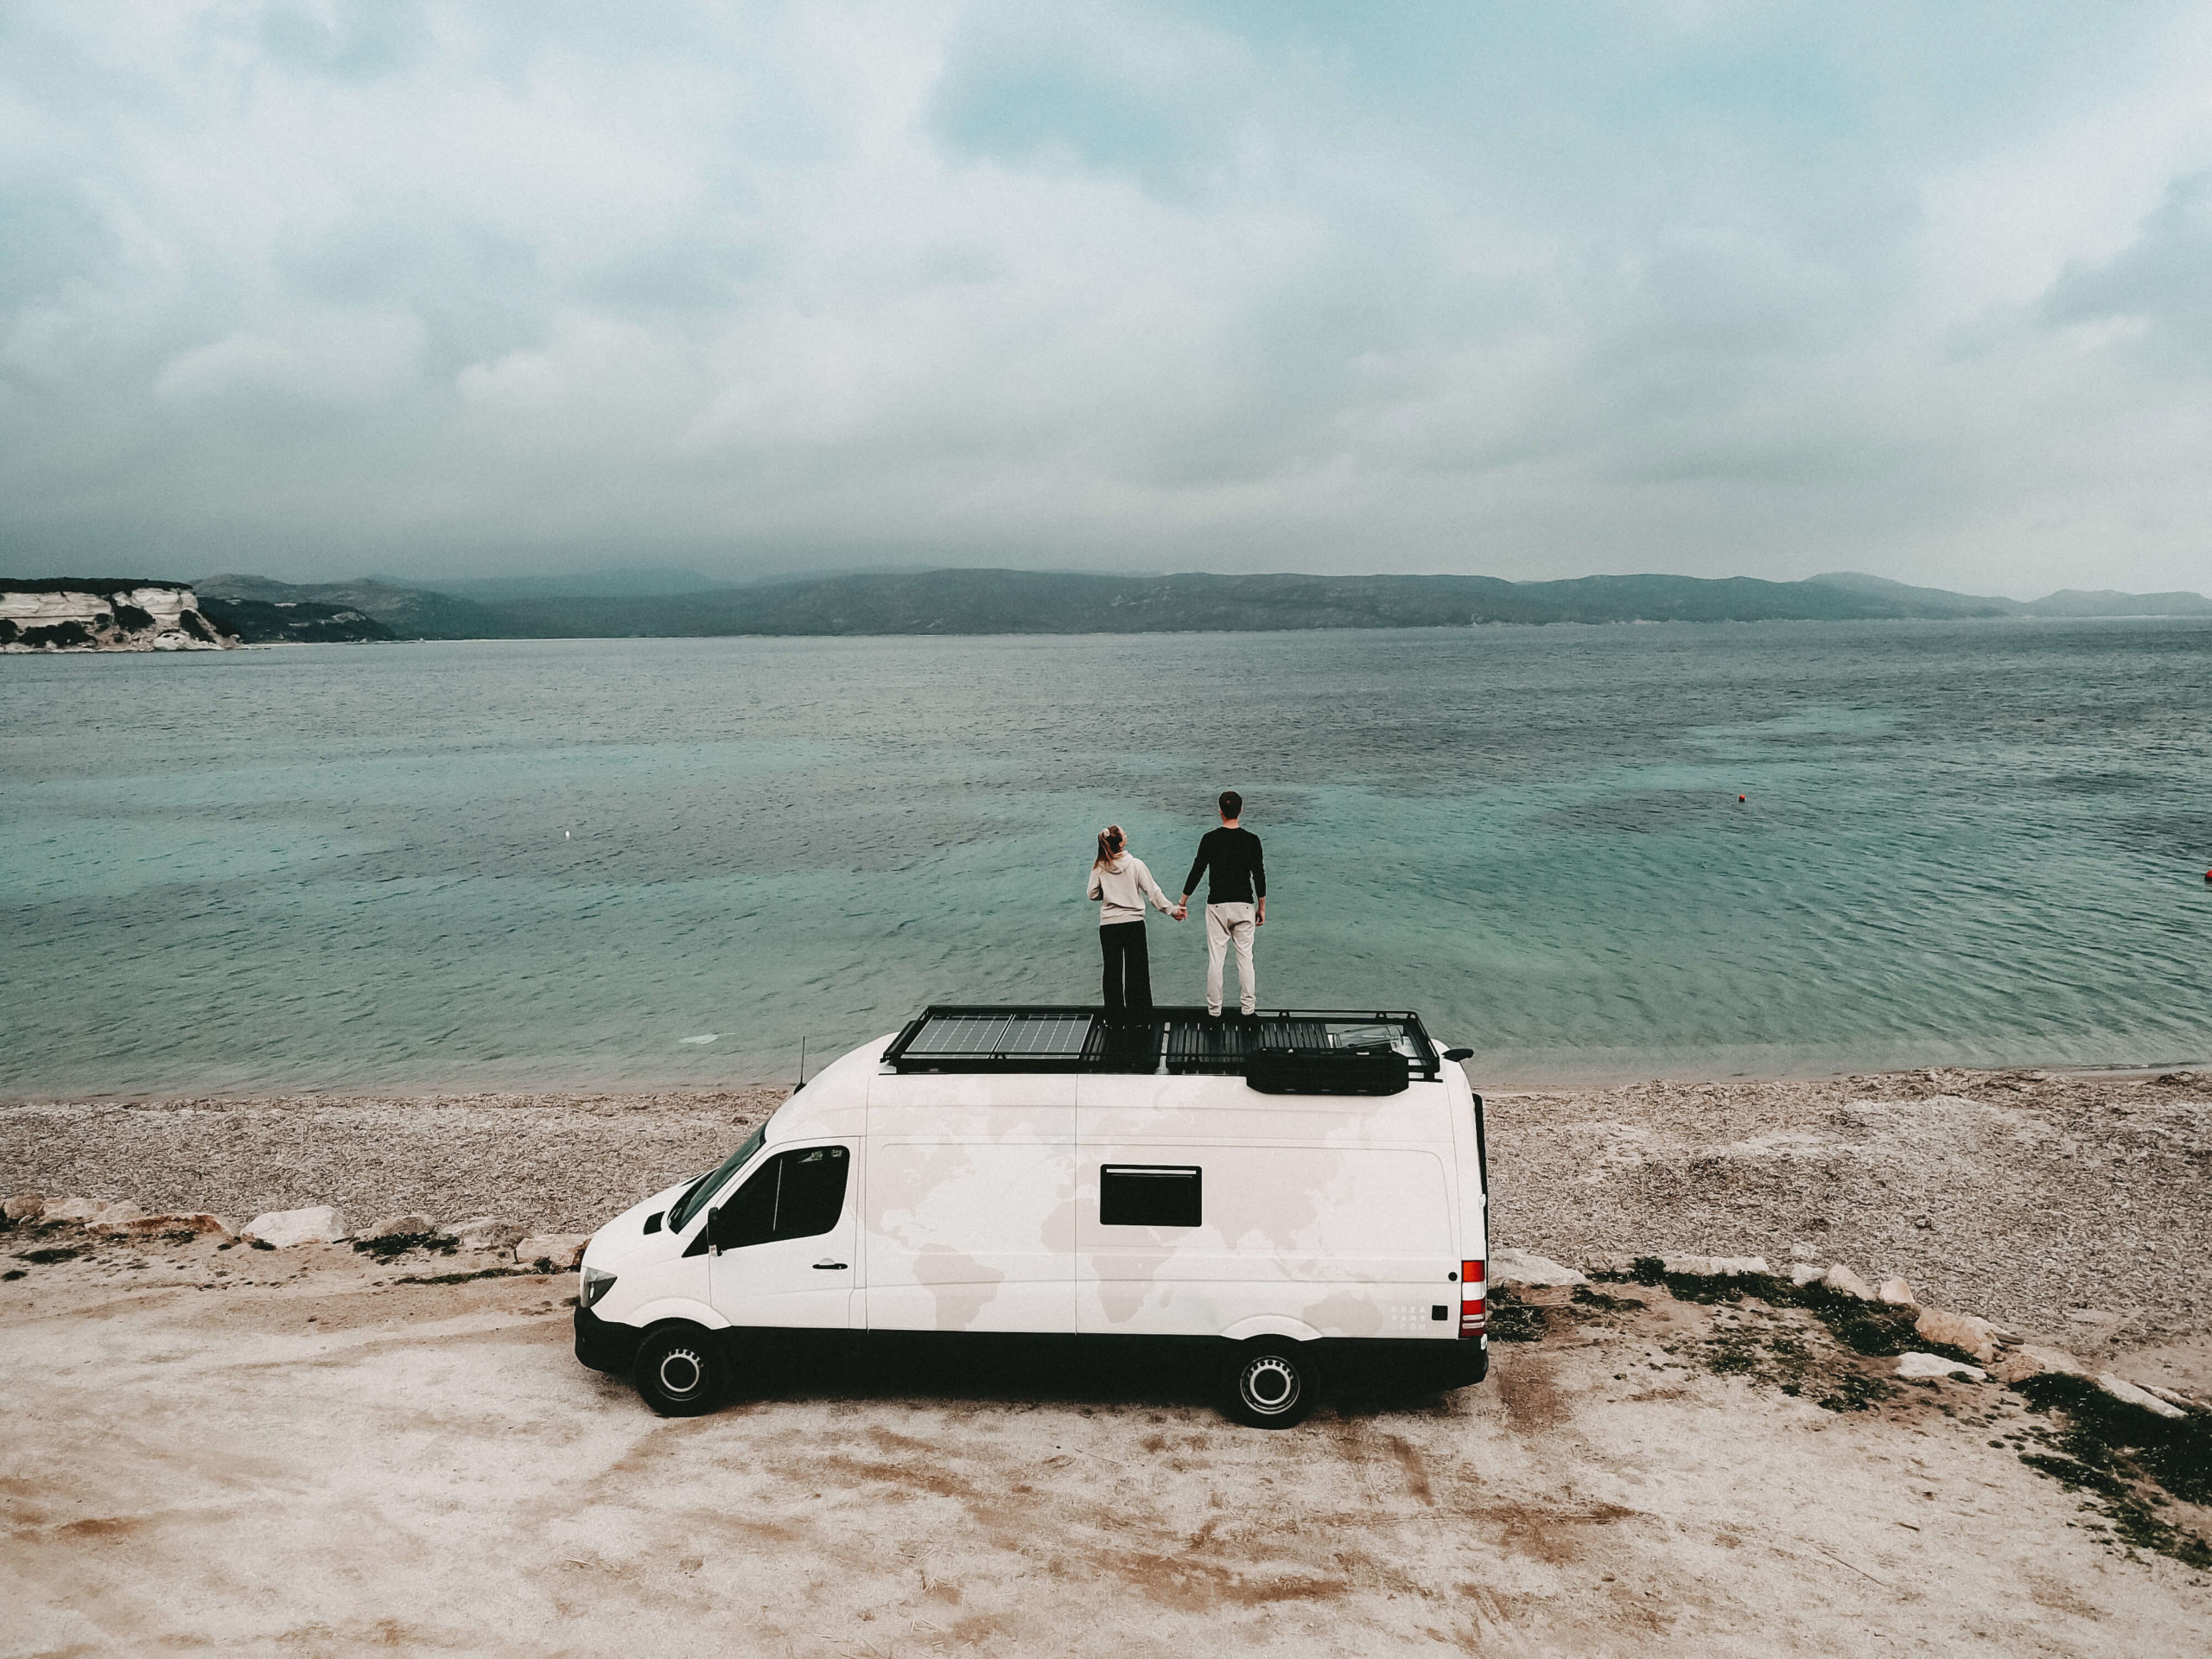 Mann und Frau stehen auf einem Camper am Strand und blicken aufs Meer